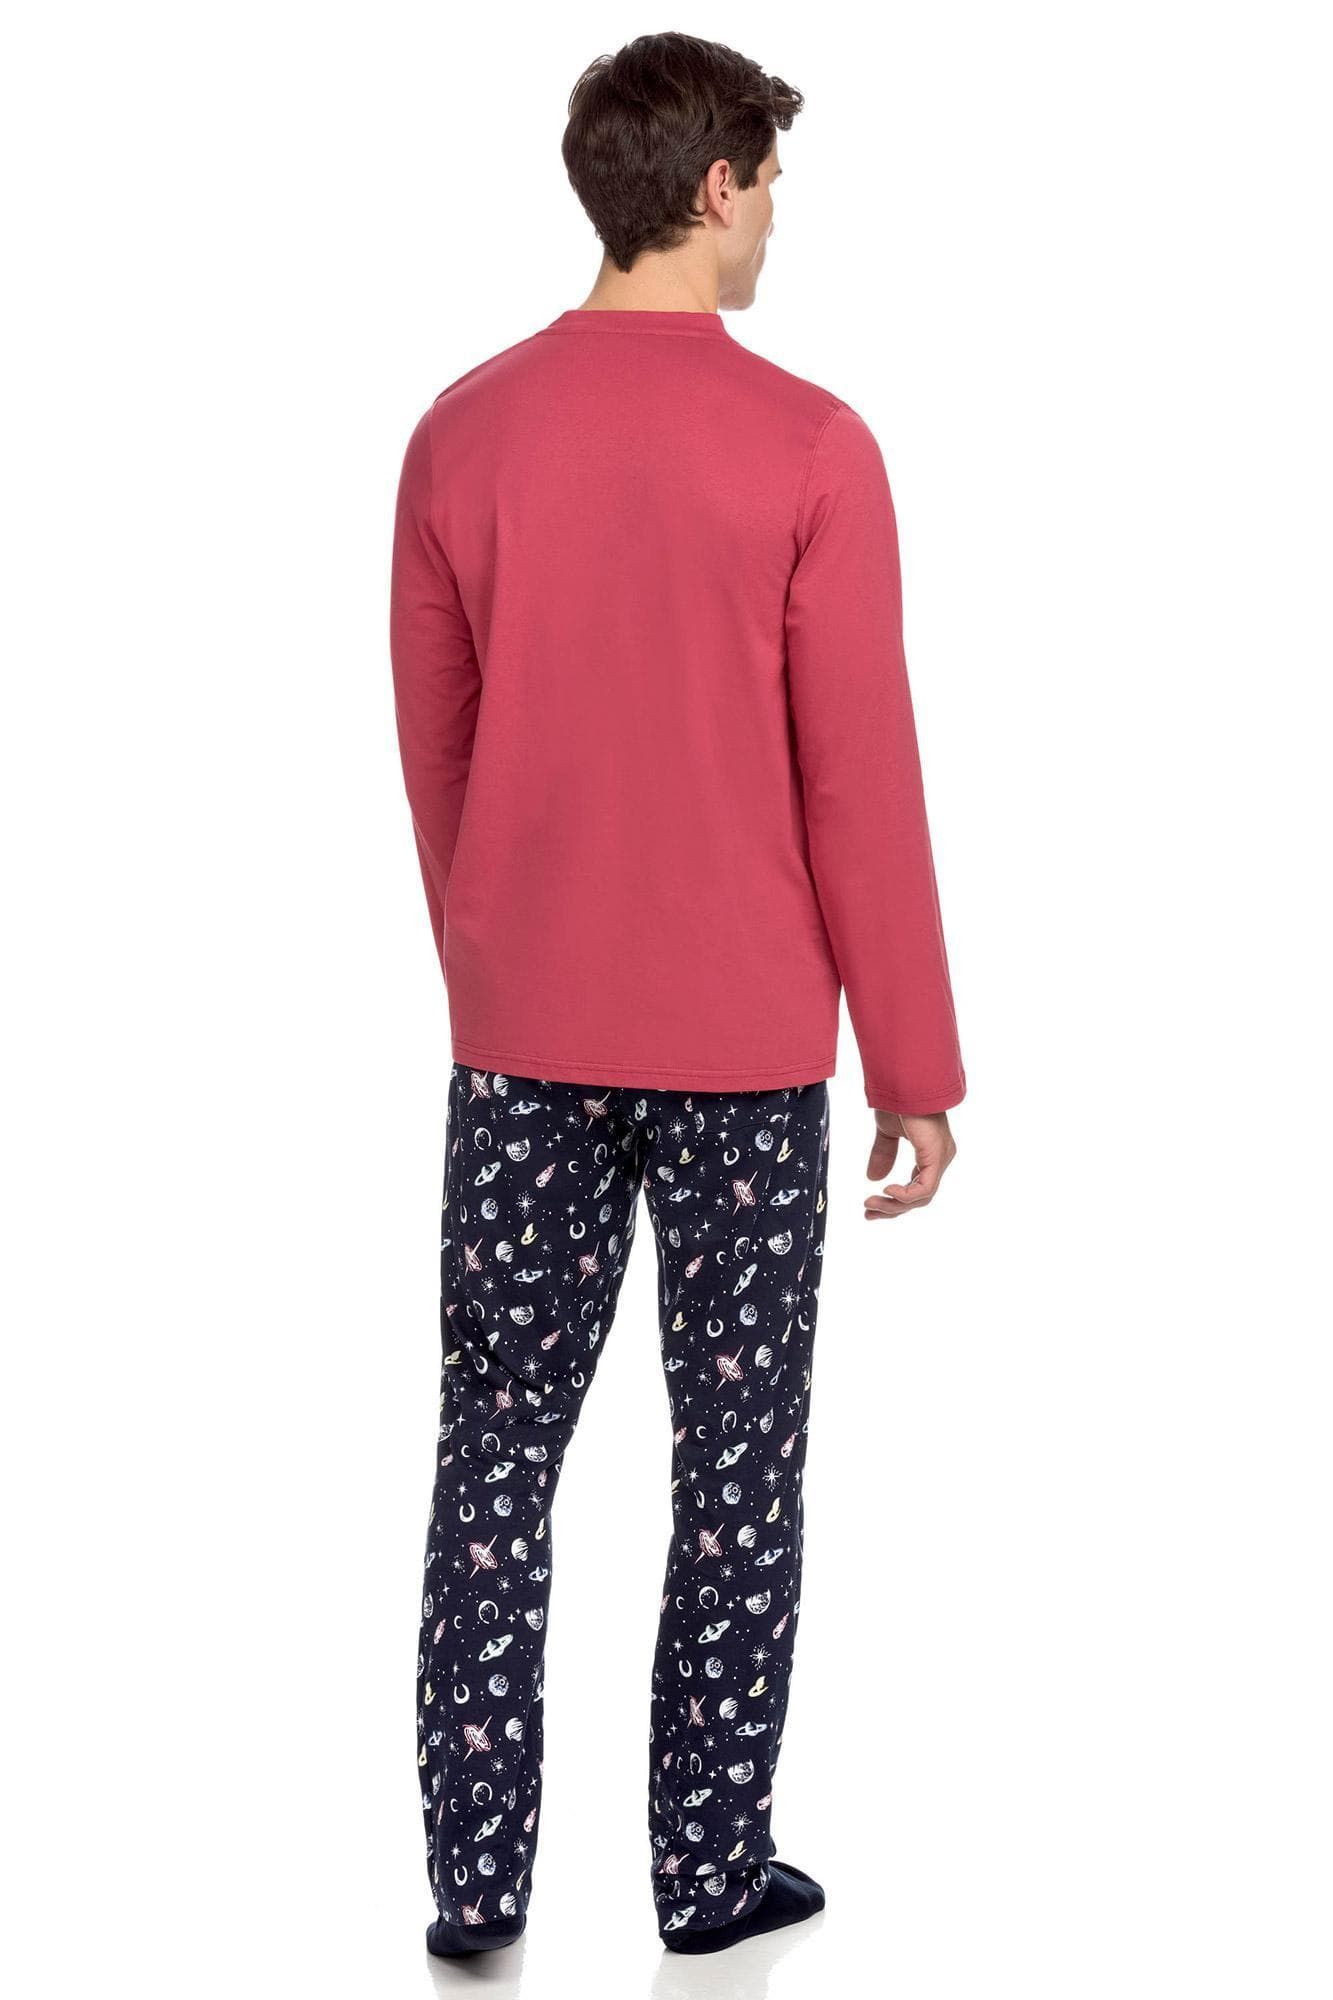 Pohodlné pánské pyžamo s kapsičkou